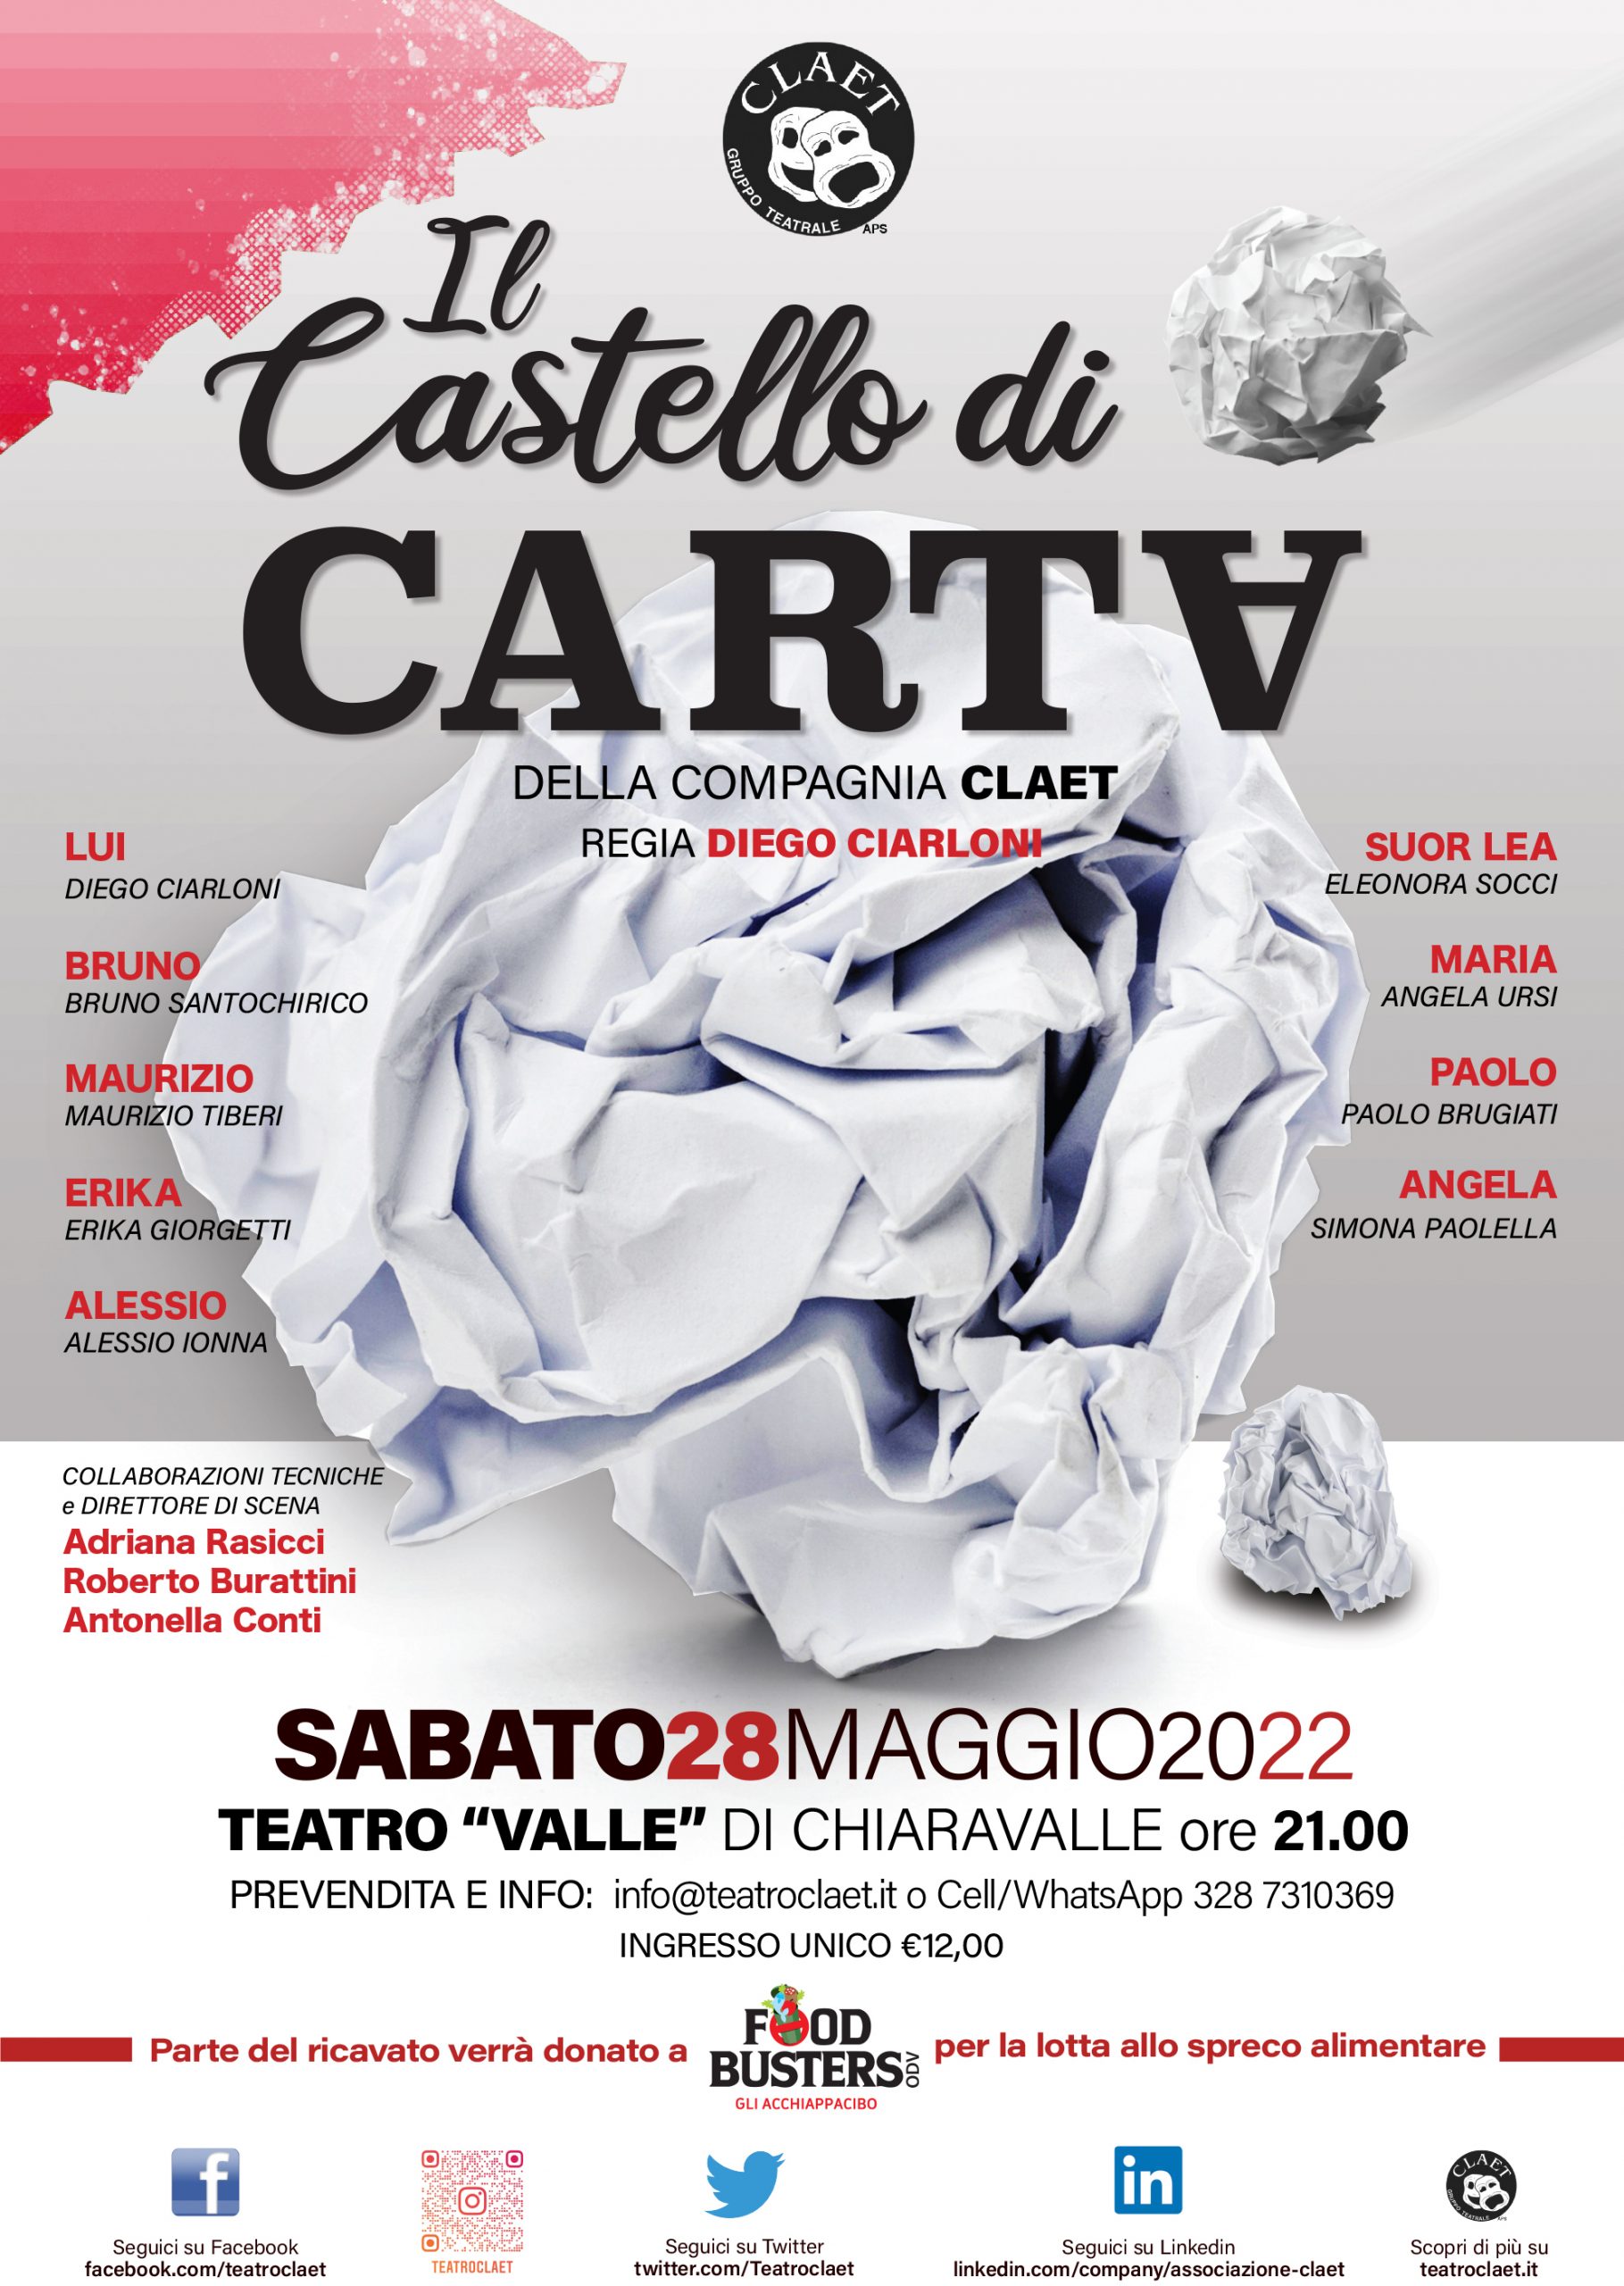 Al teatro Valle di Chiaravalle in scena lo spettacolo teatrale Il castello di carta